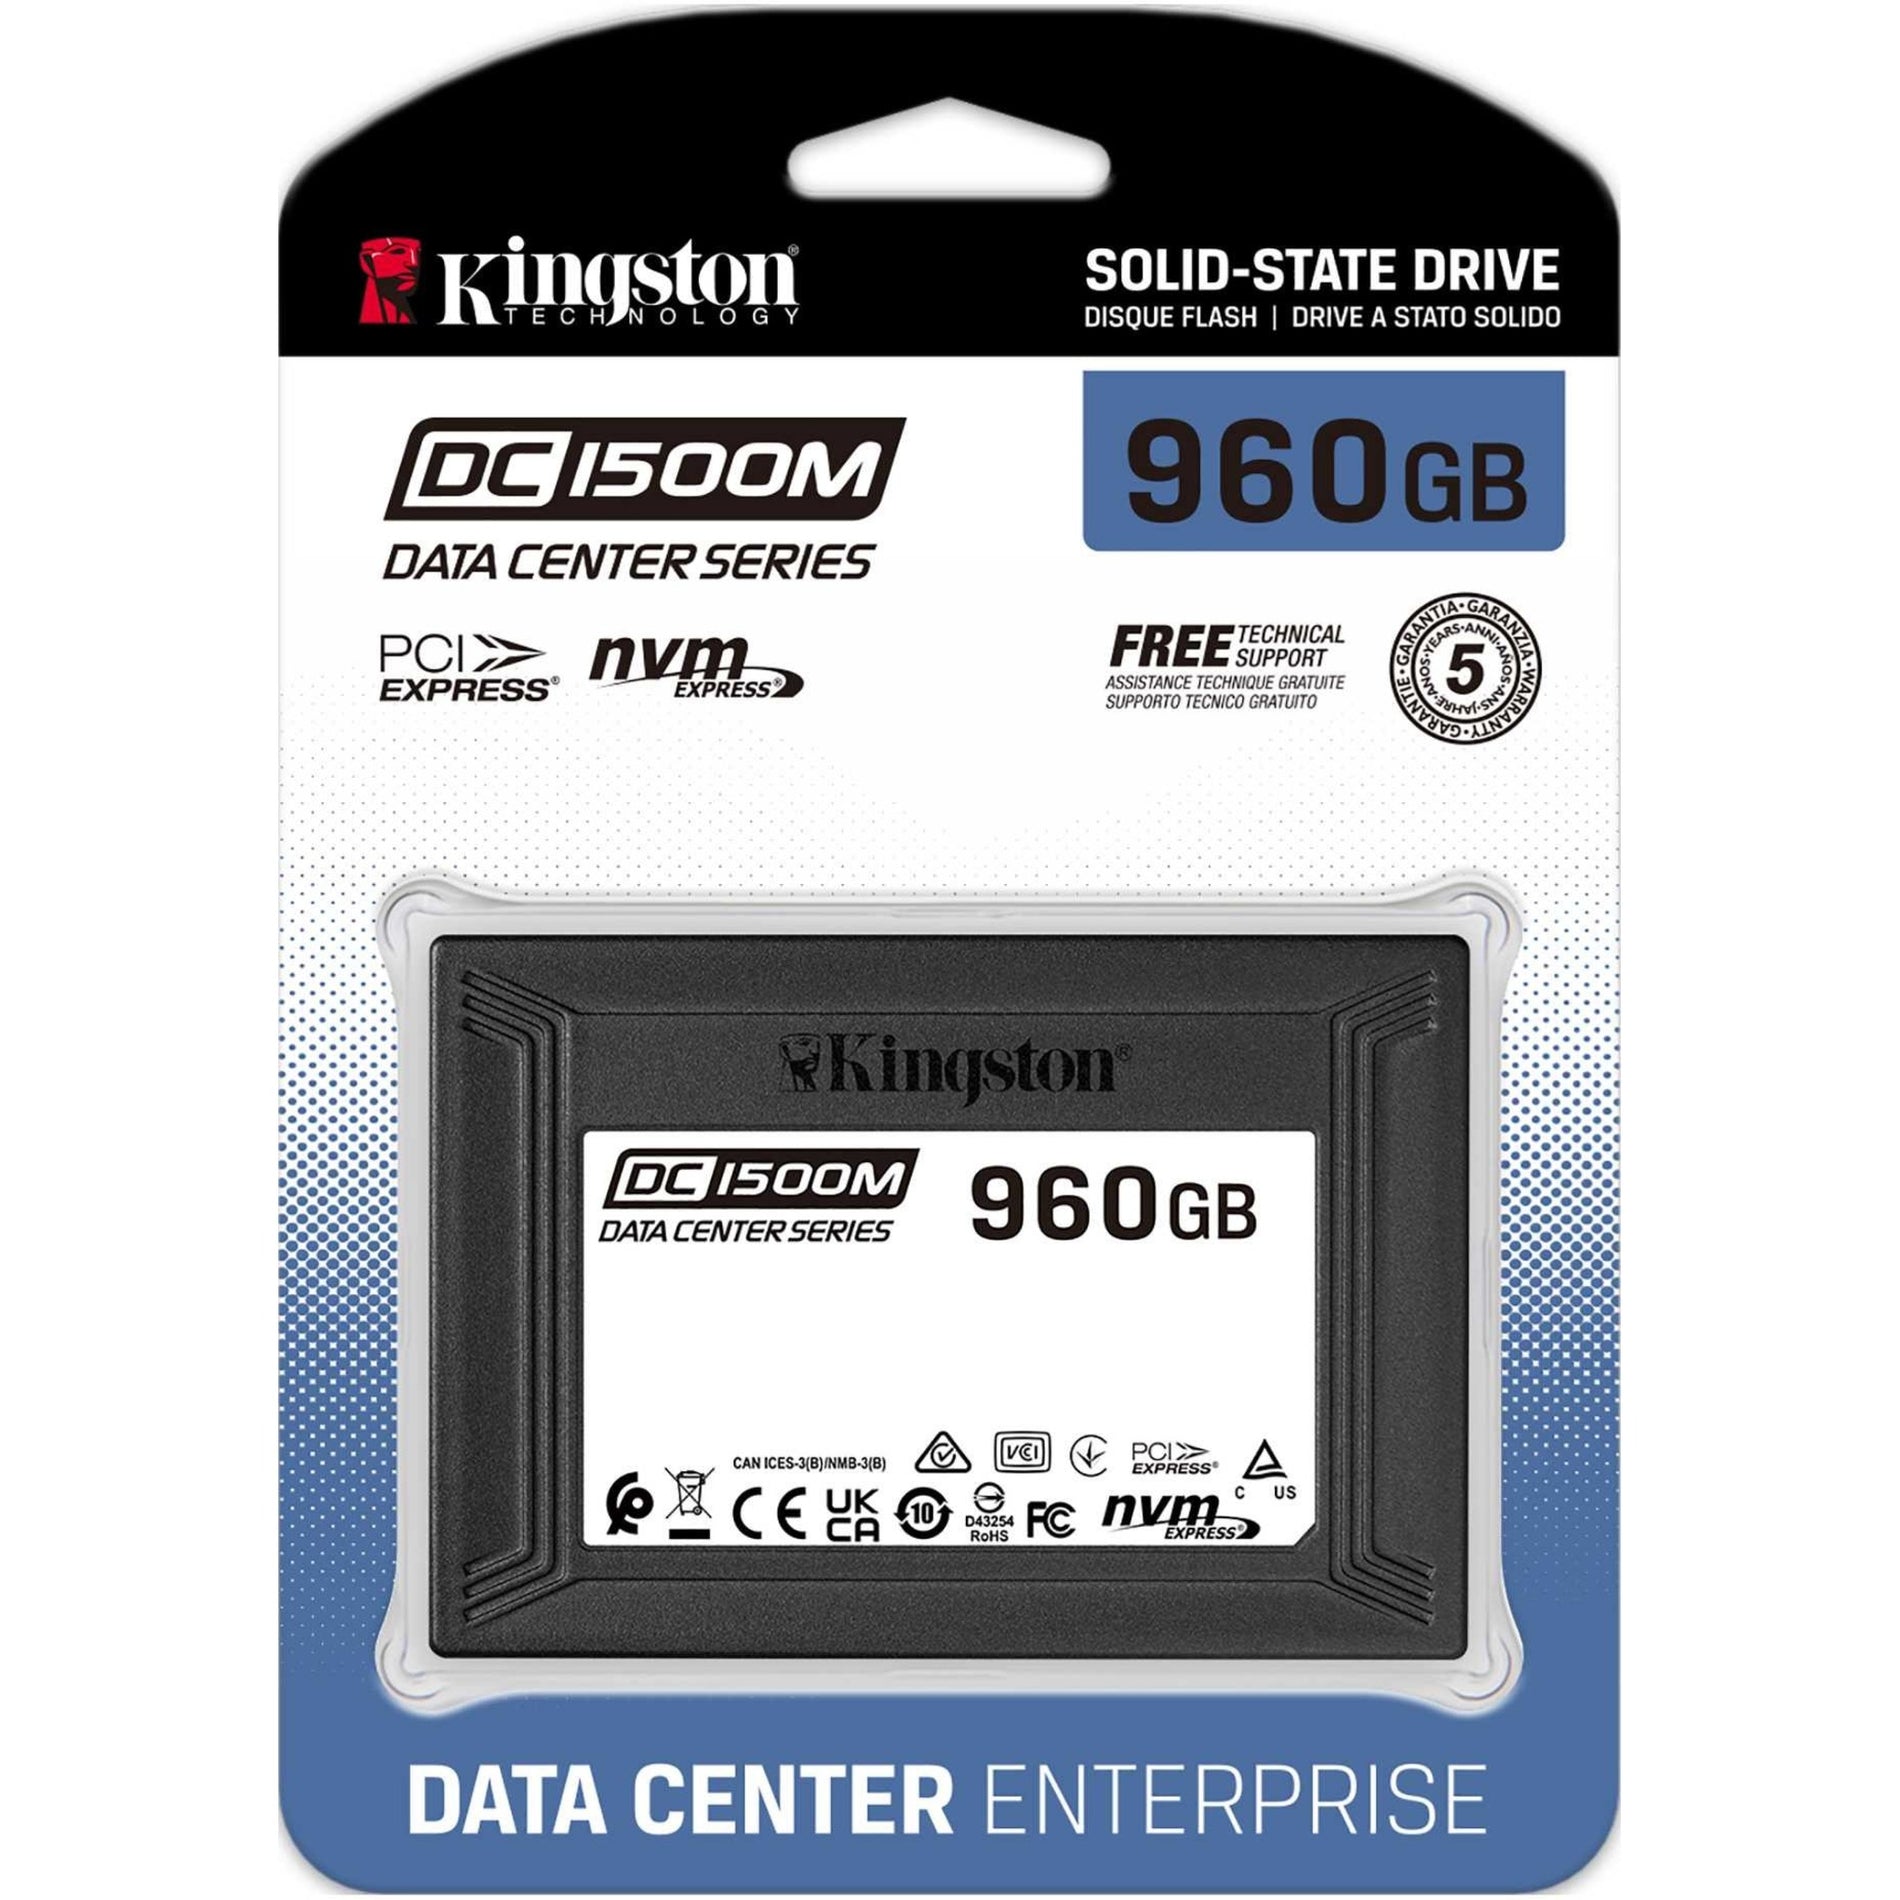 Kingston SEDC1500M/960G DC1500M U.2 Enterprise SSD, 960GB, PCIe NVMe, 5 Year Warranty